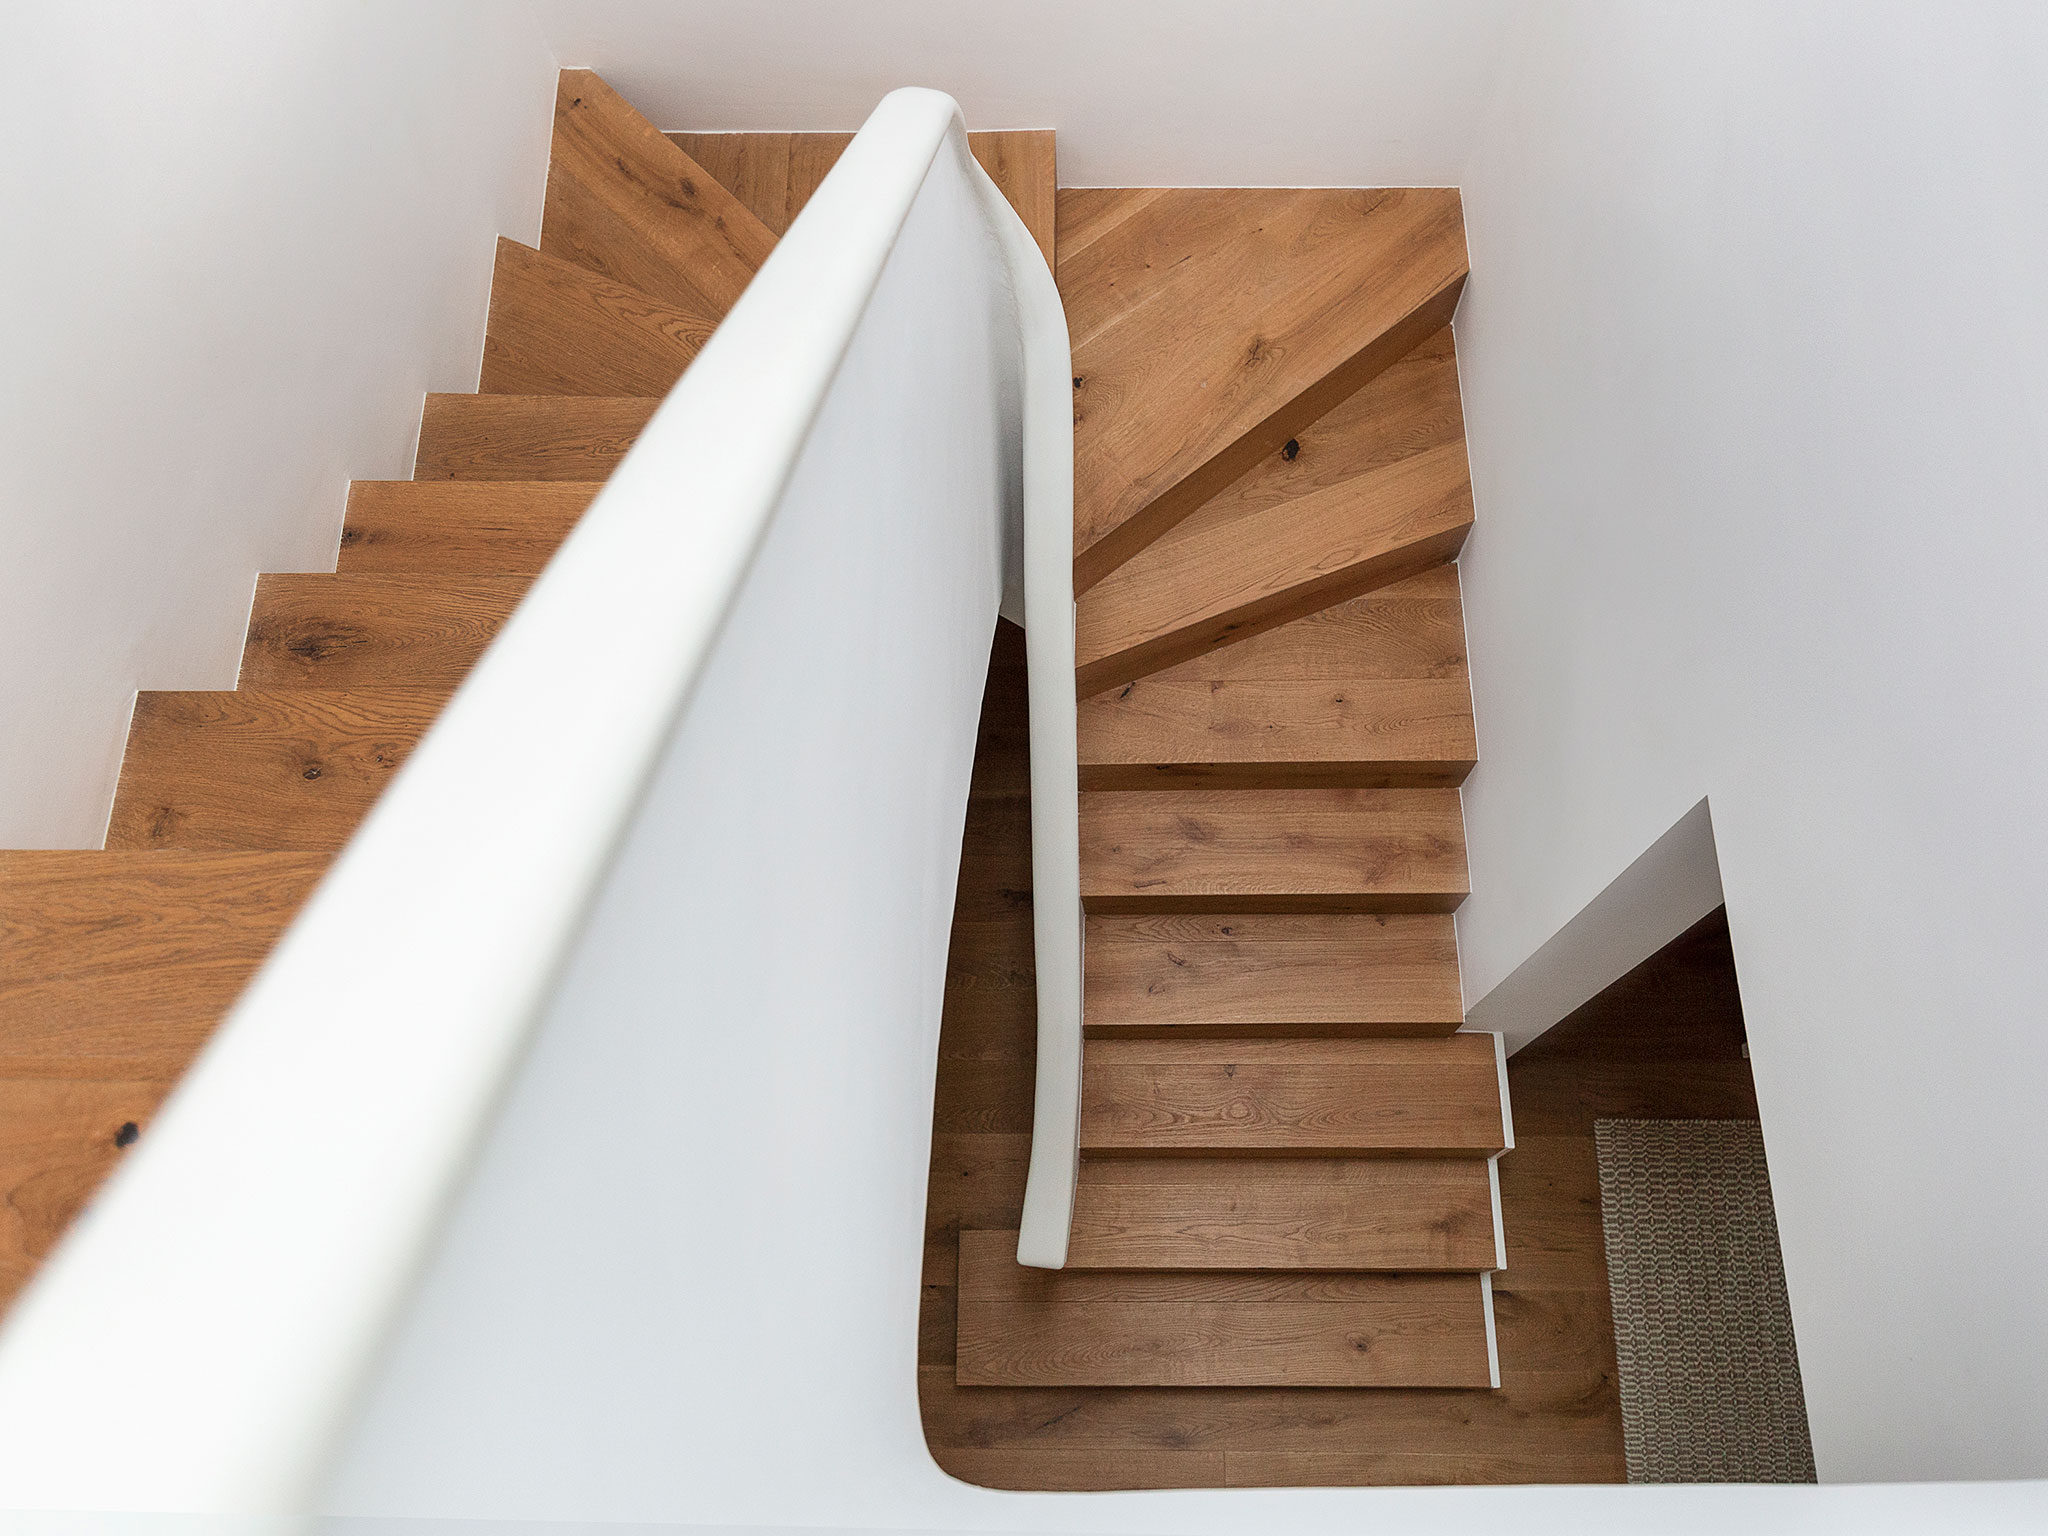 Rehabilitació Casa Sabadell - escales superiors | Dues ARQuitectes